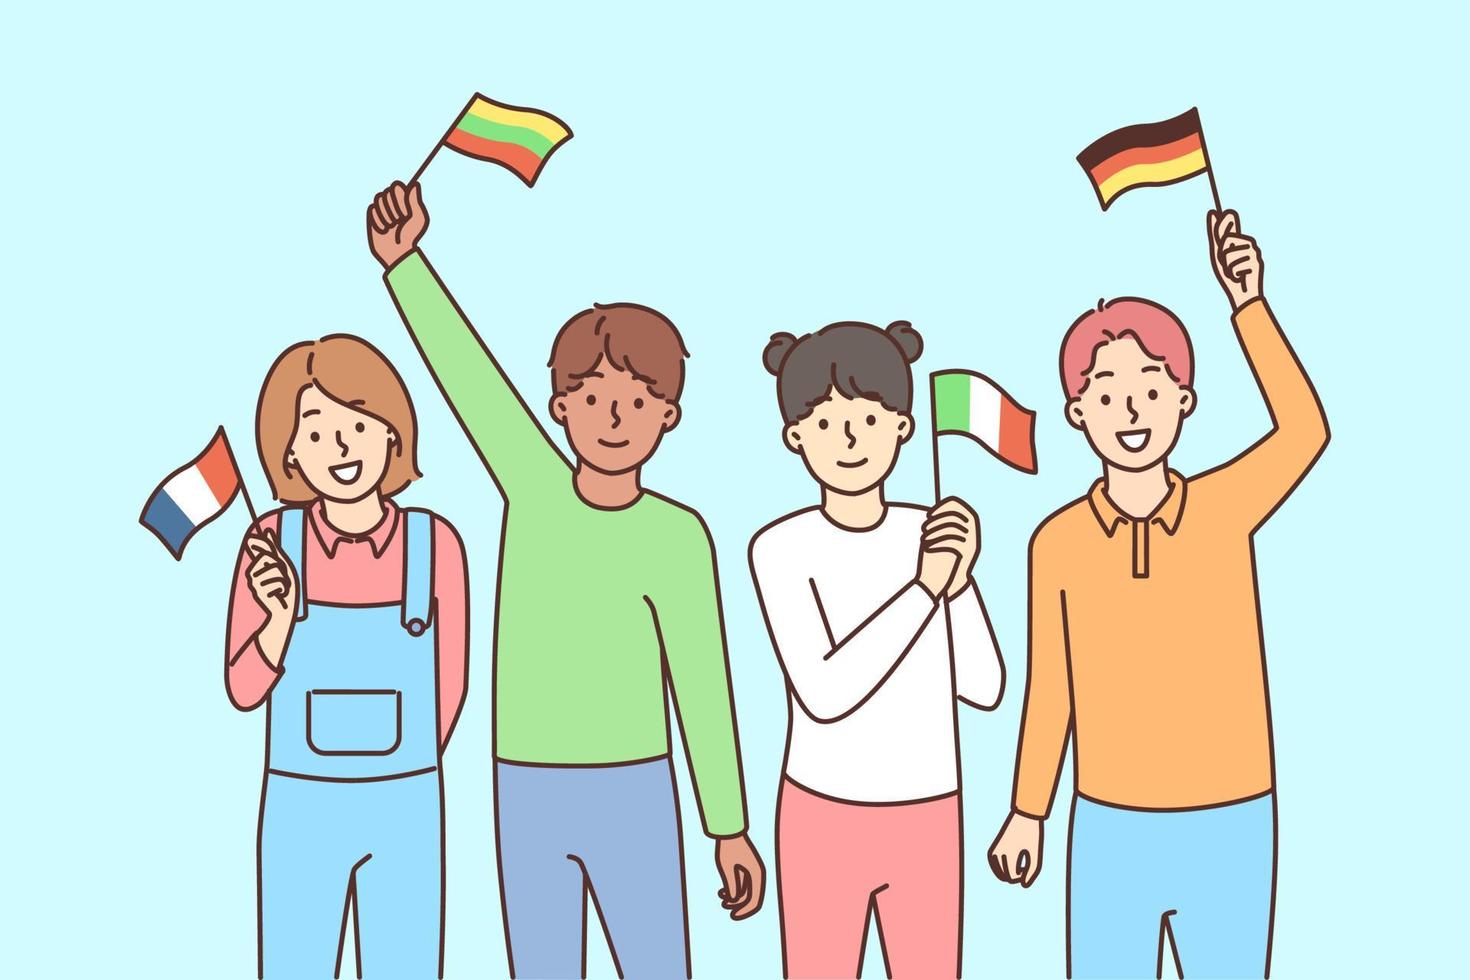 leende barn med flaggor av annorlunda länder i händer njut av internationell utbildning. Lycklig barn från olika nationaliteter engagerad i raser erfarenhet. vektor illustration.